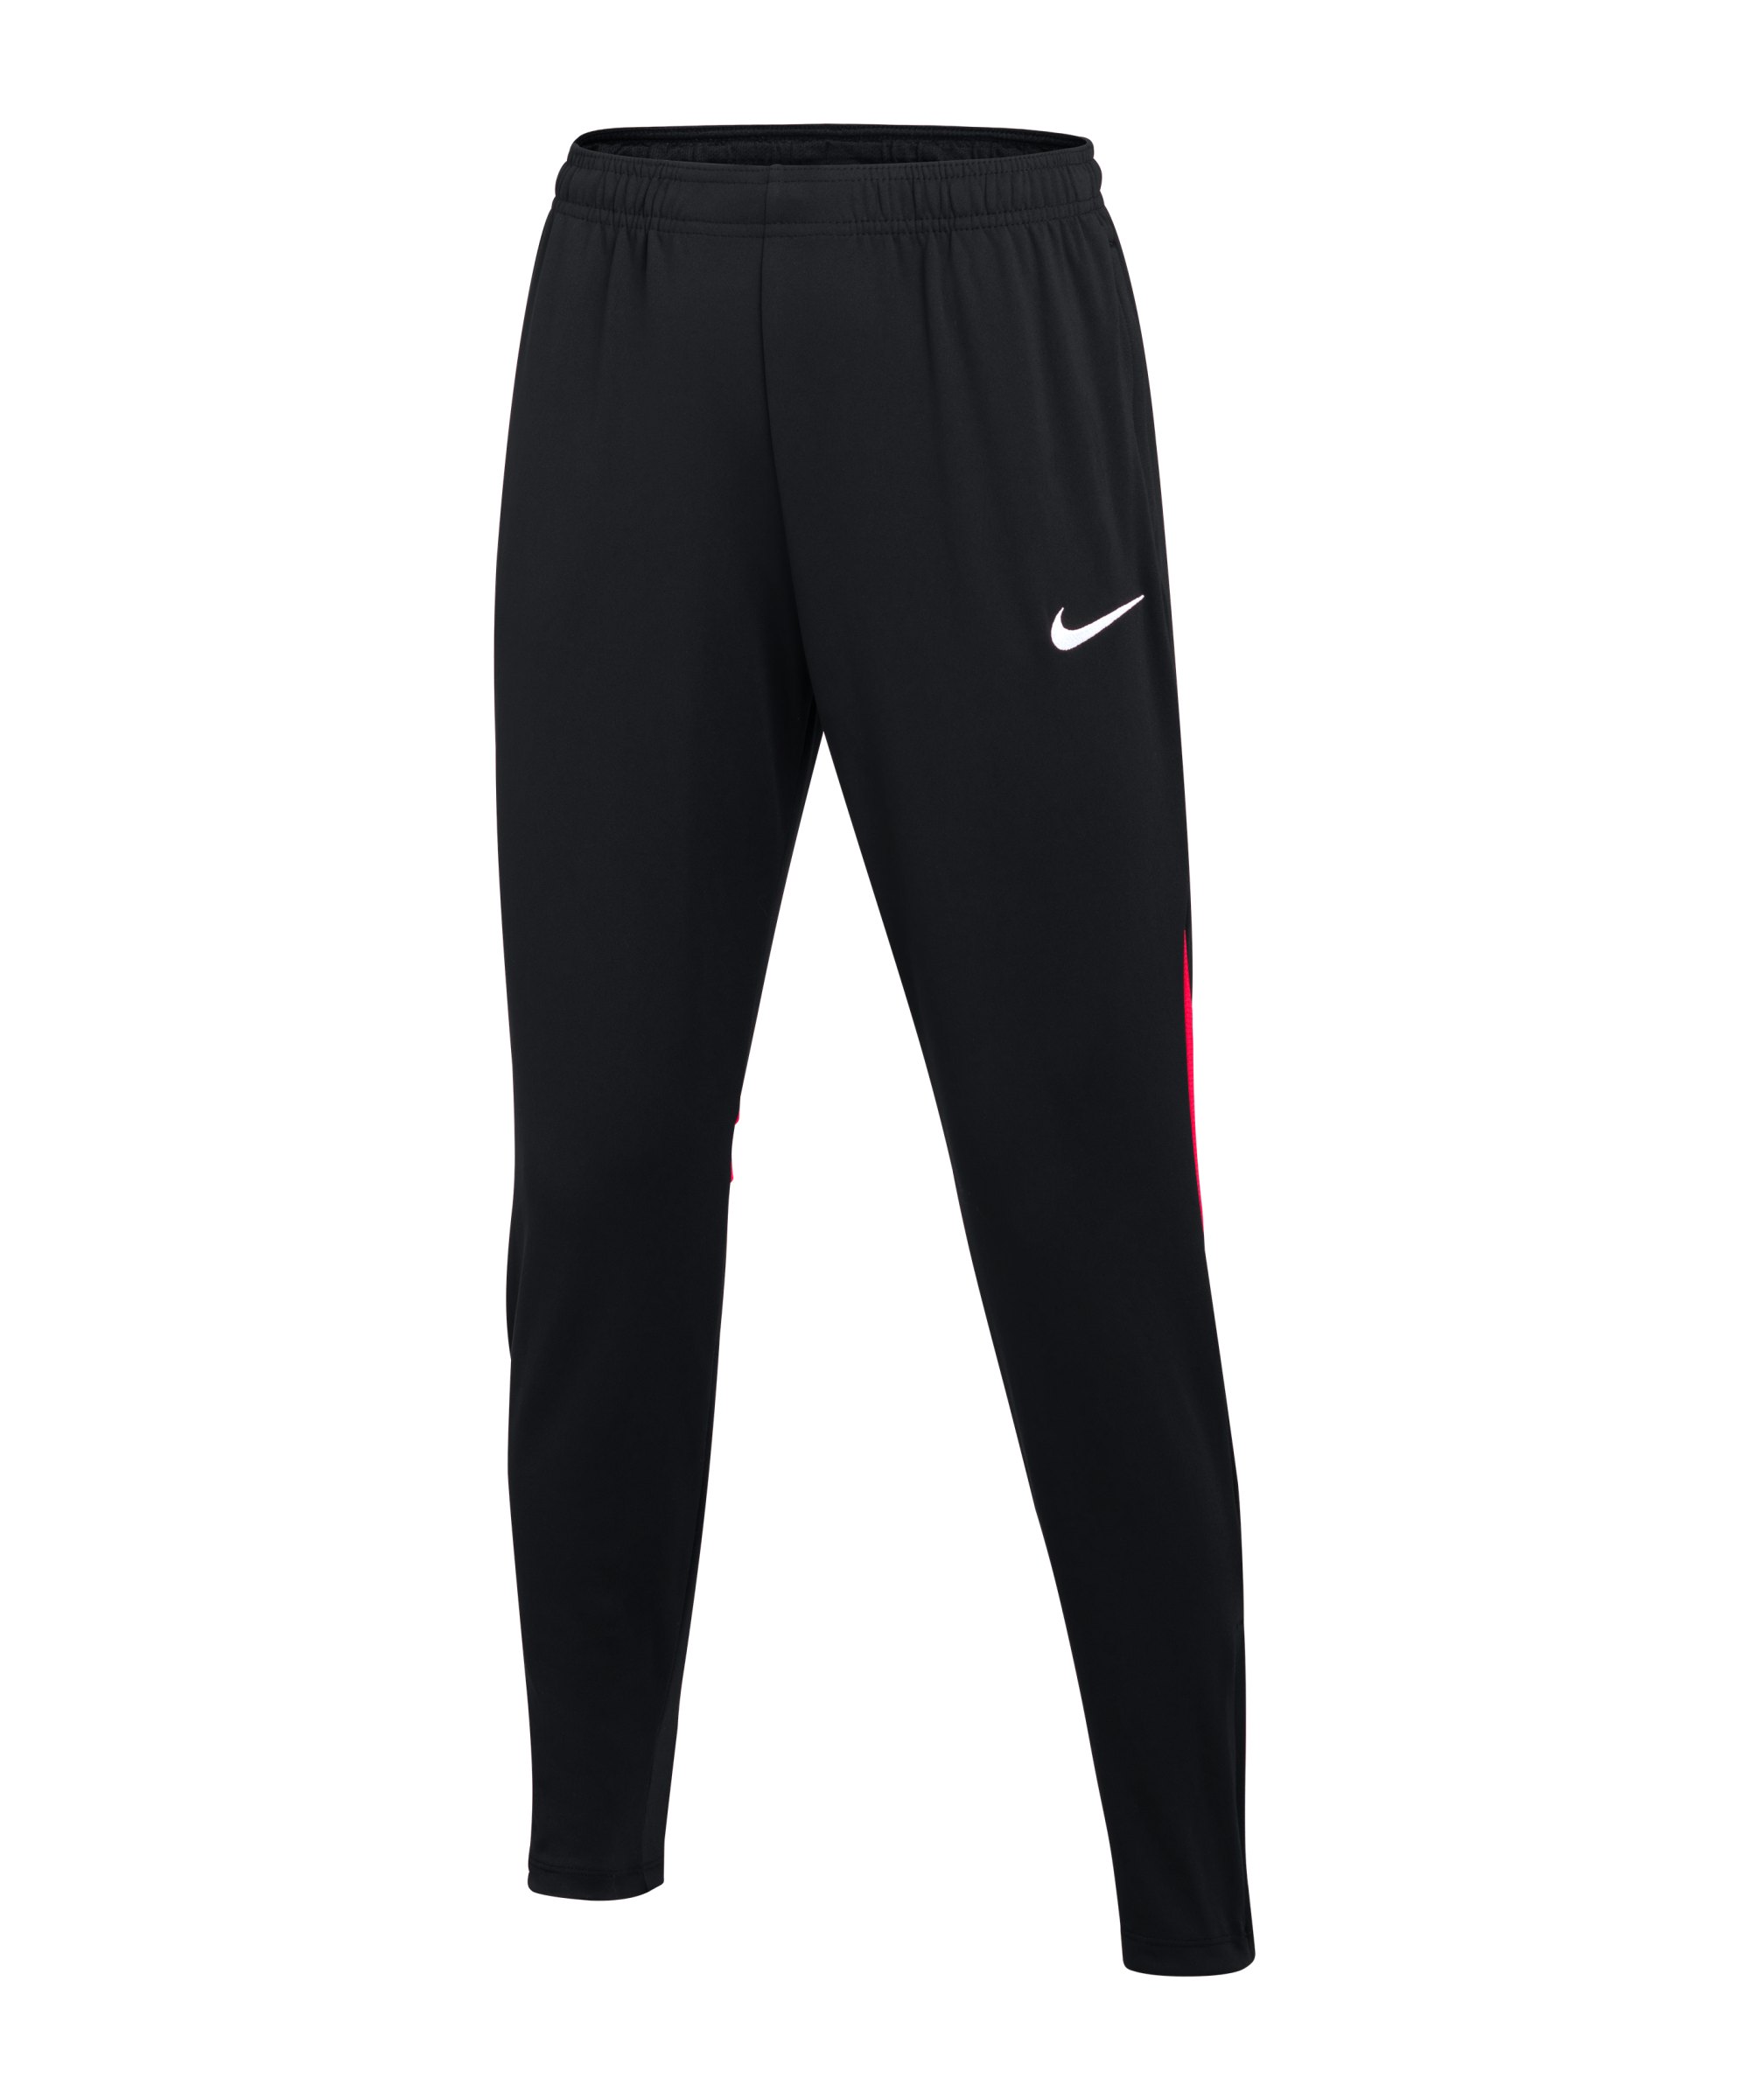 Nike Academy Pro Trainingshose Damen Schwarz F013 - schwarz